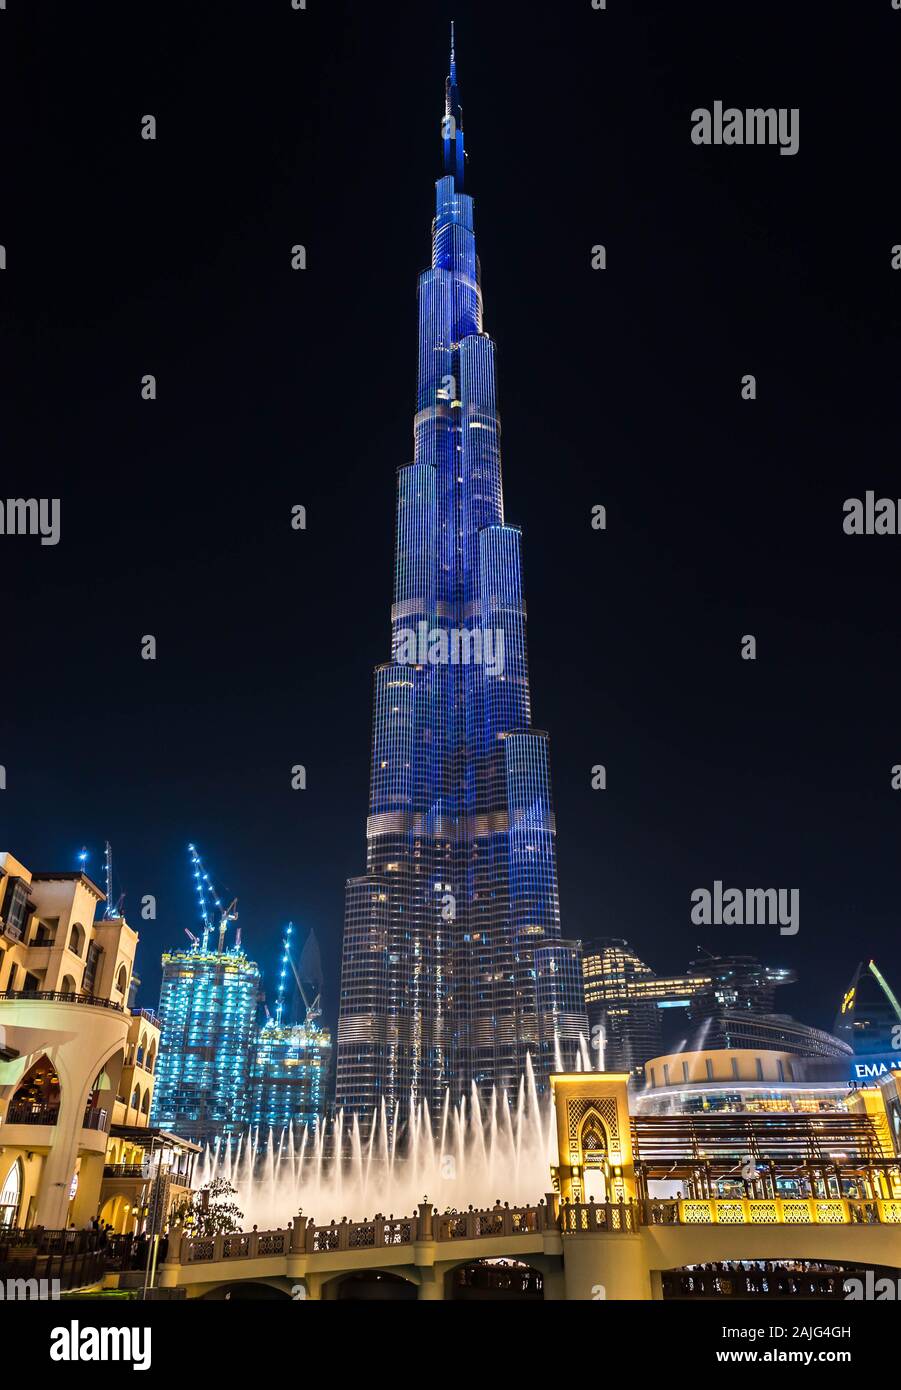 Dubai, Emiratos Árabes Unidos: el increíble espectáculo de luz futurista en el Burj Khalifa, el edificio más alto rascacielos en el mundo, iluminada por la noche Foto de stock